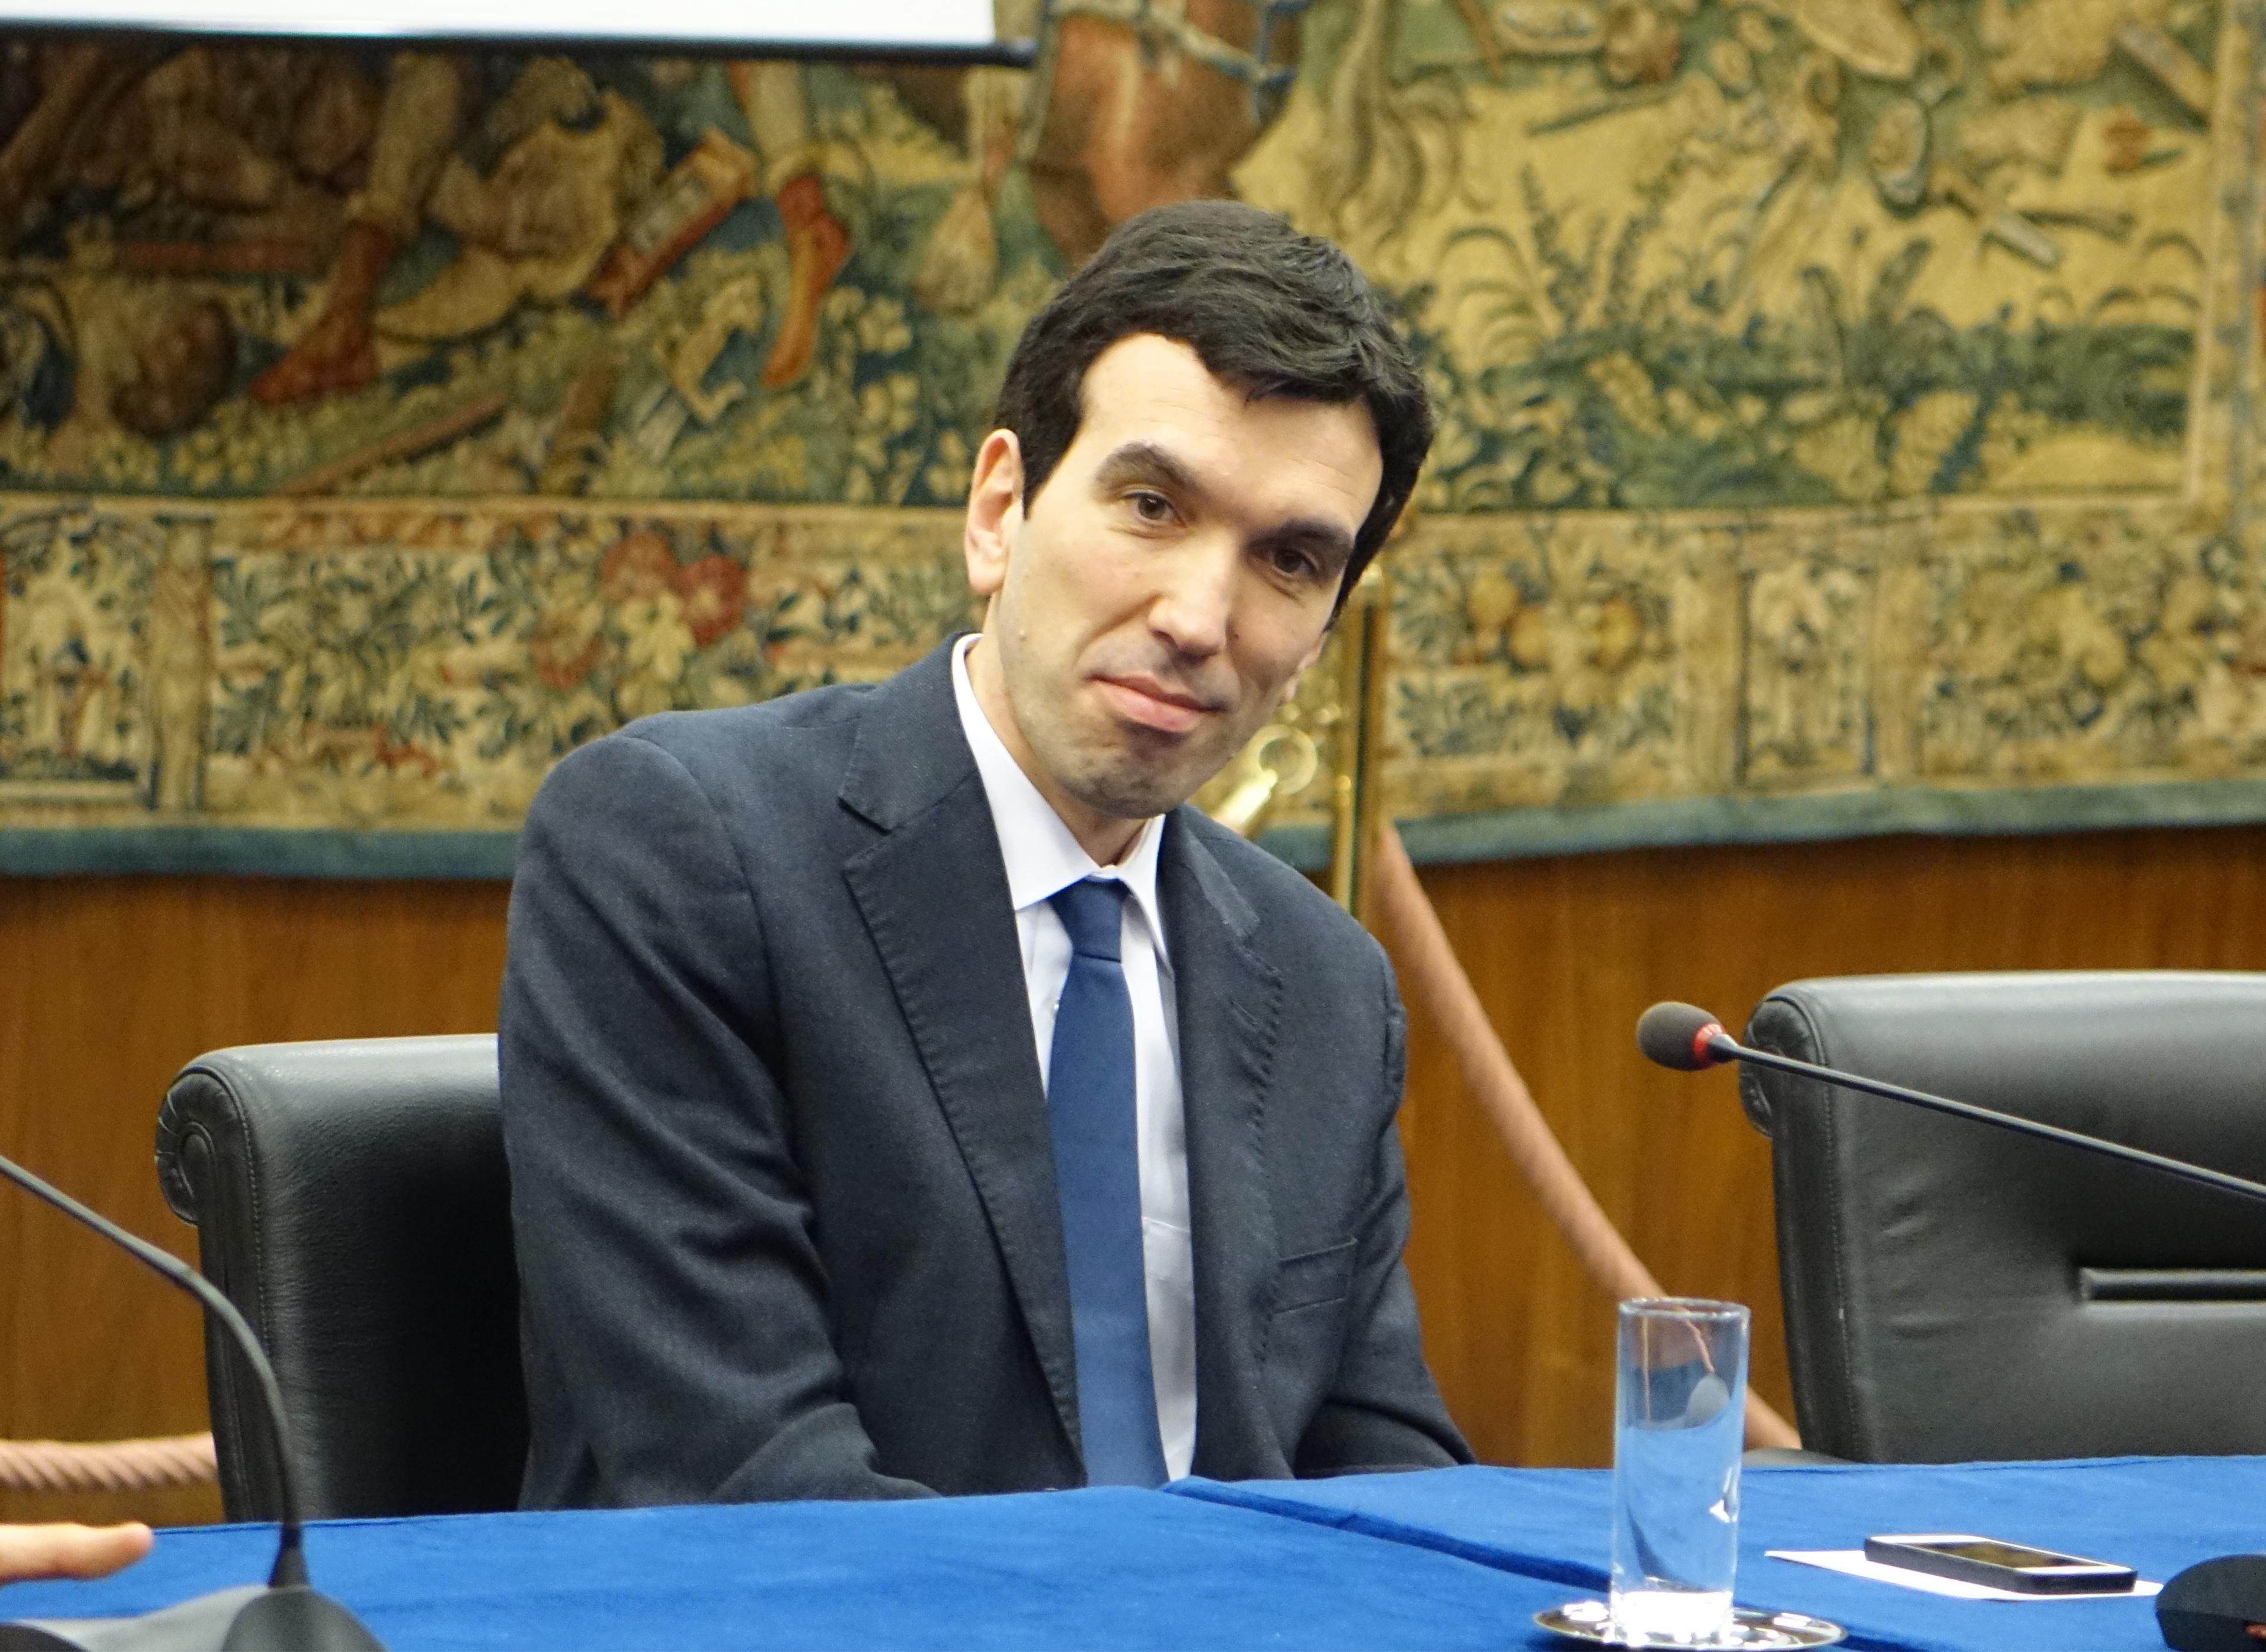 Maurizio Martina - Ministro delle Politiche Agricole, Alimentari e Forestali (foto Adnkronos/Cristiano Camera)